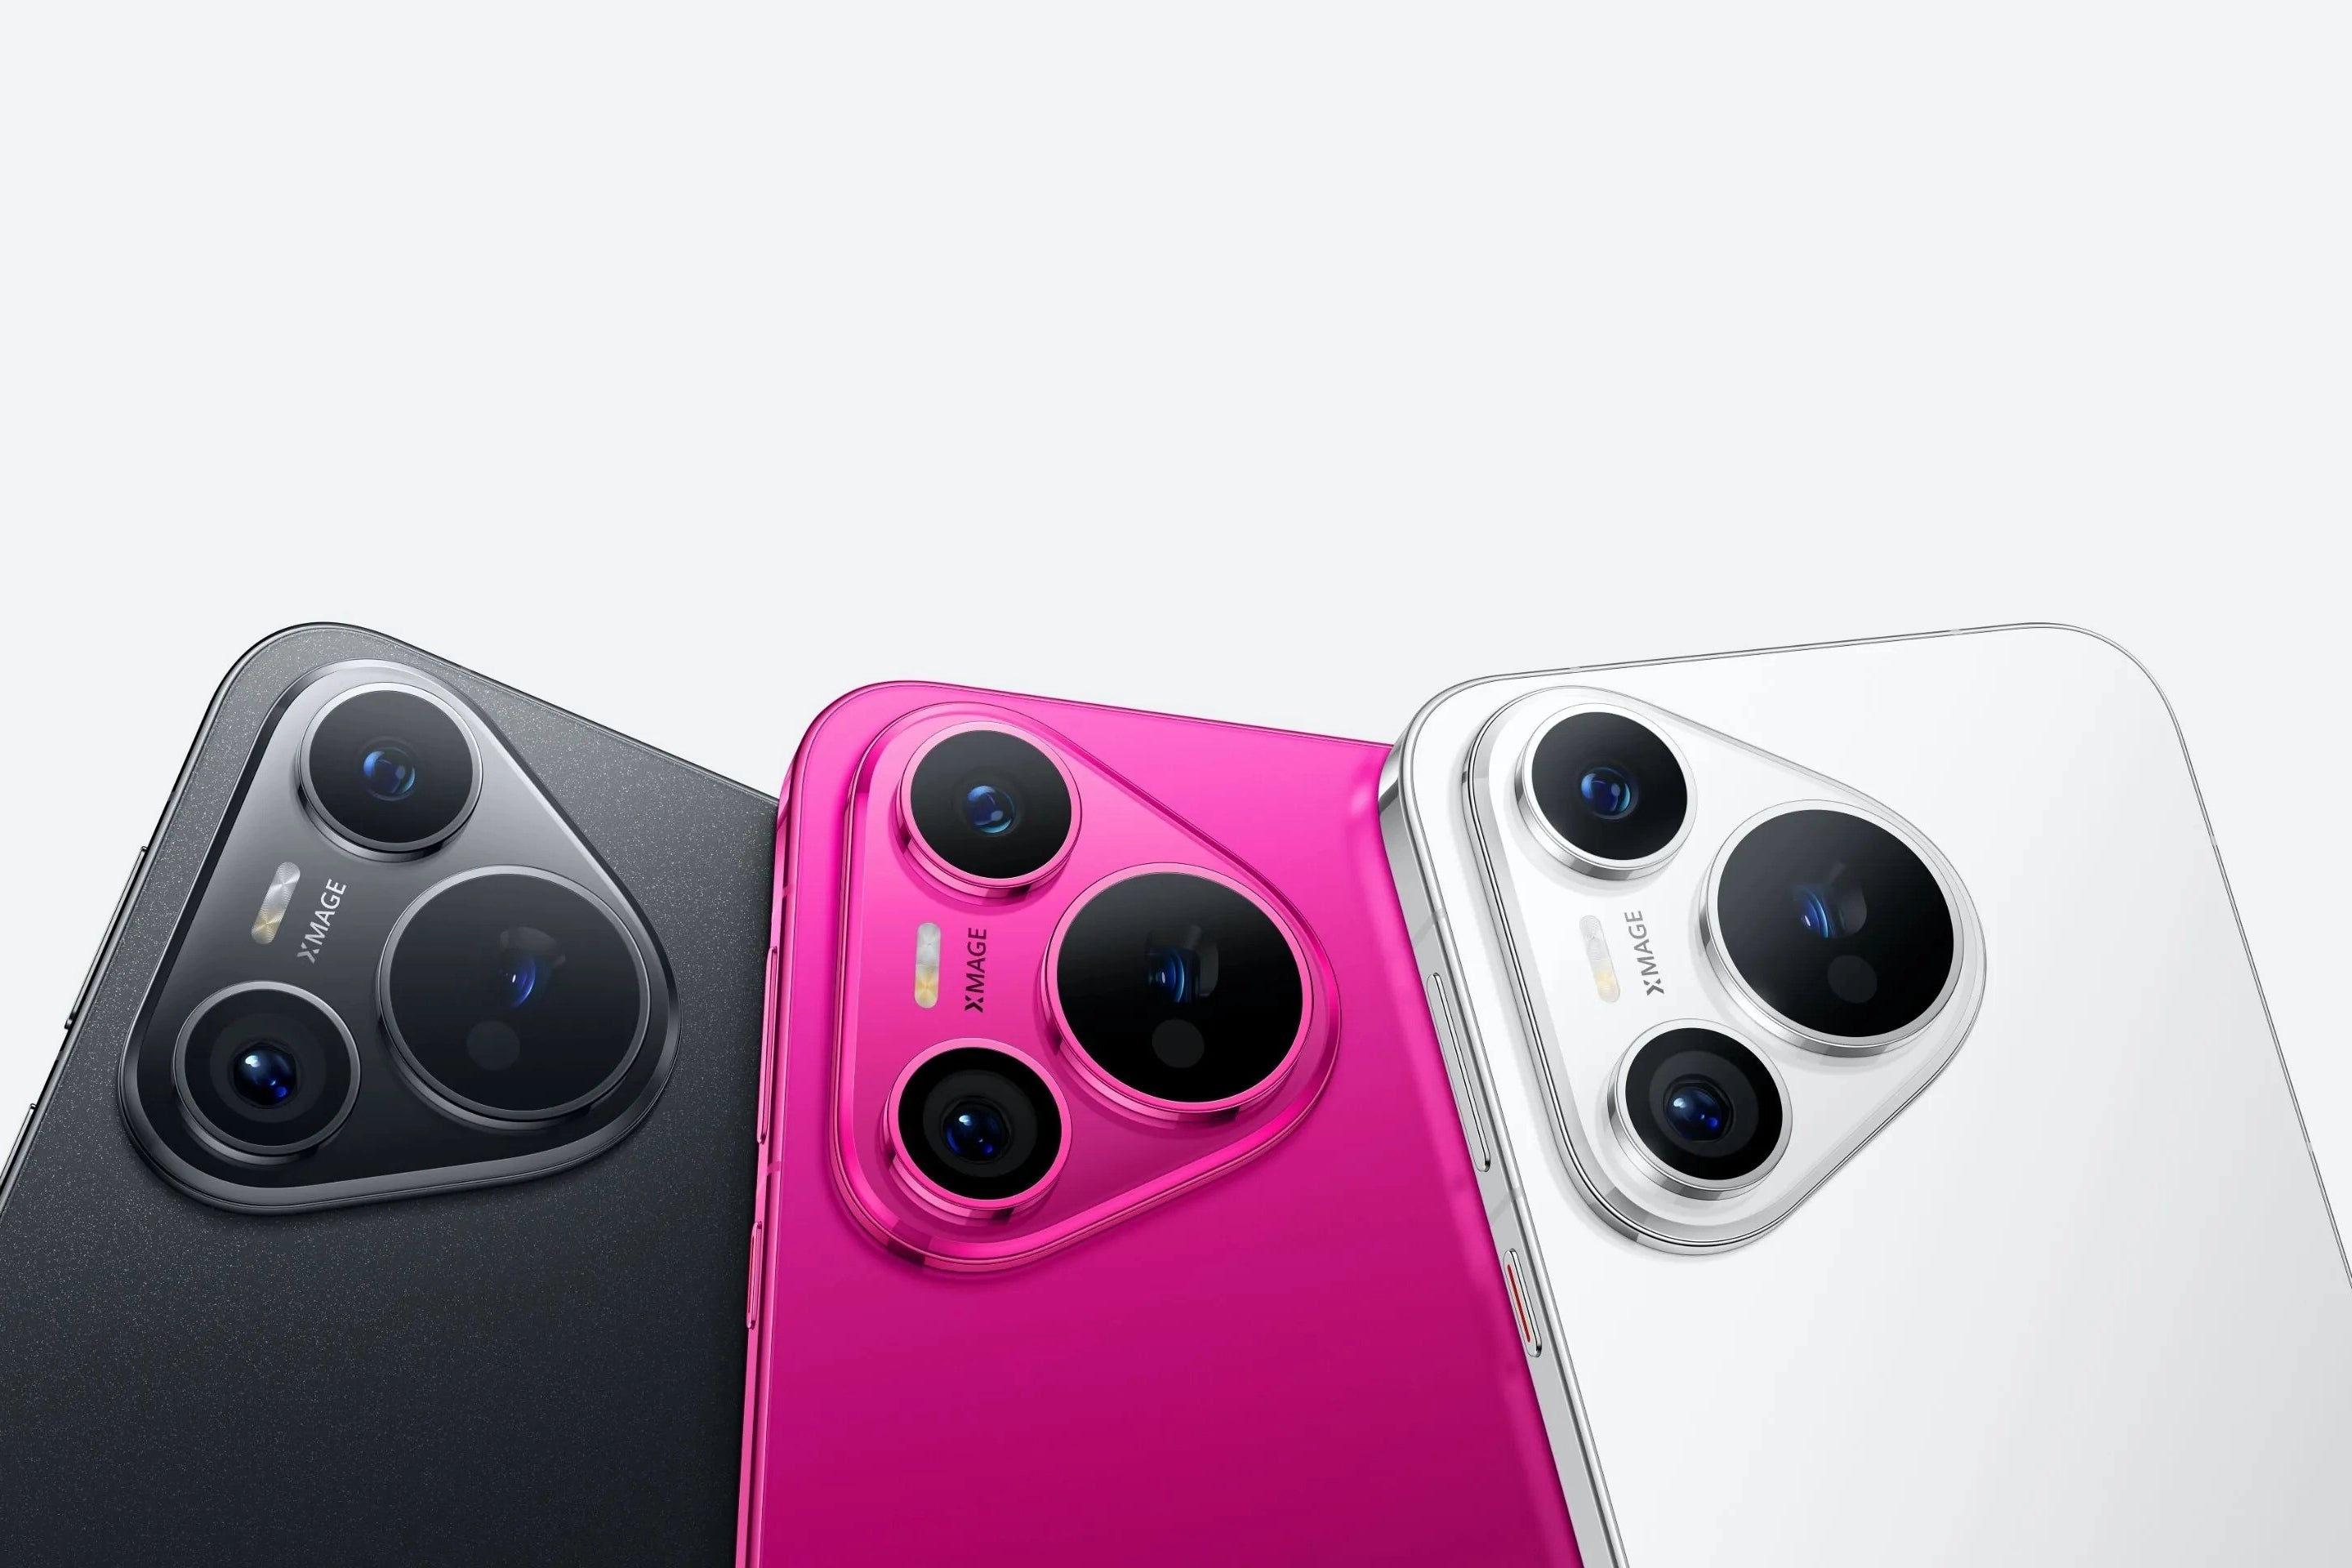 O Pura 70 em preto, rosa e branco (Crédito da imagem – Huawei) - A série Pura 70 centrada na câmera da Huawei torna-se global